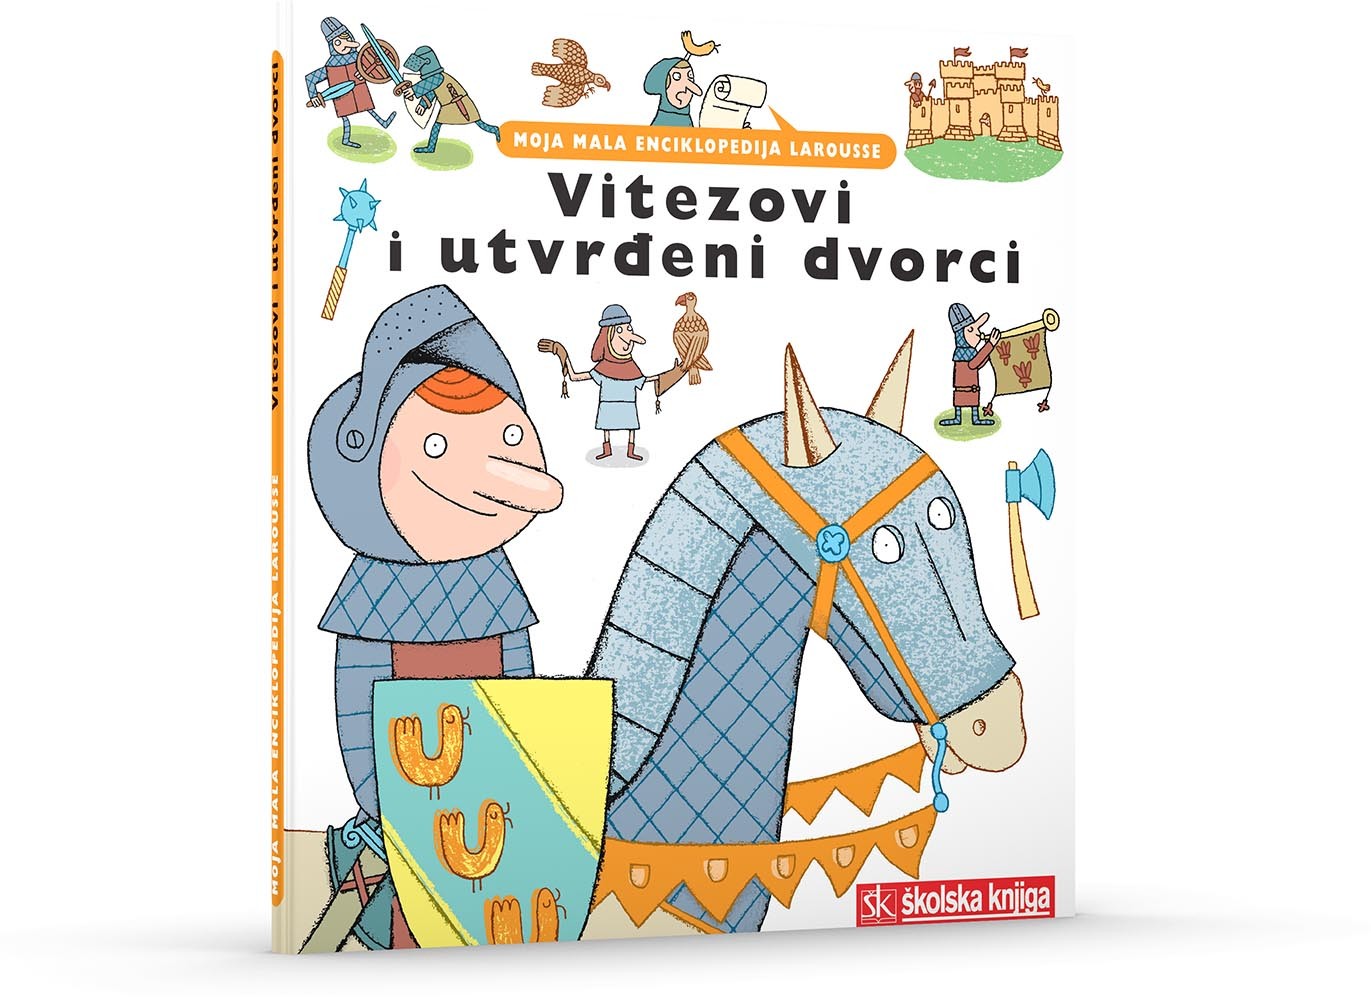 Vitezovi i utvrđeni dvorci - Moja mala enciklopedija Larousse (svezak 11.)